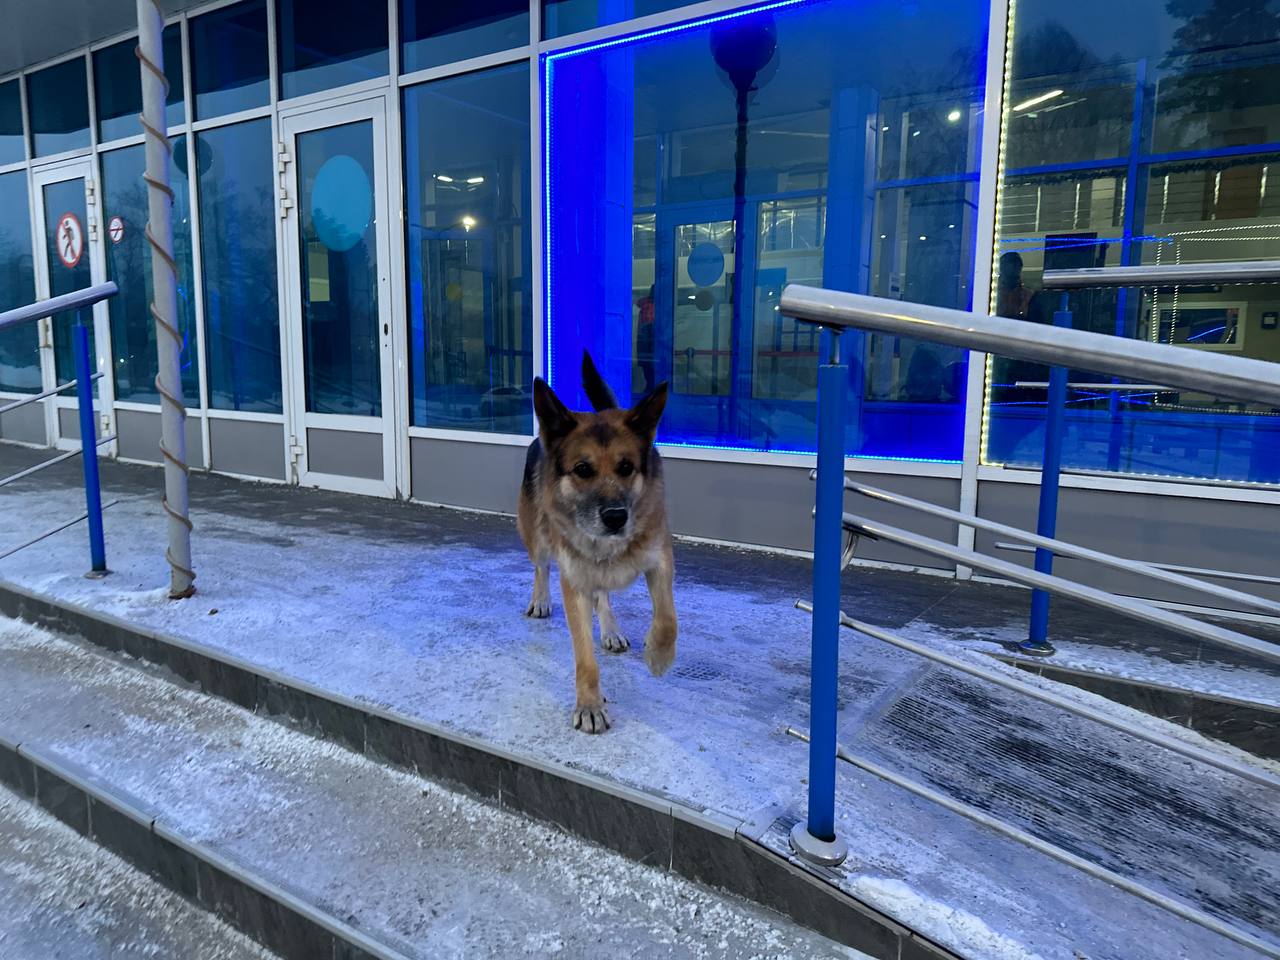 В аэропорту Новокузнецка пригрели потерявшегося пса, хозяев просят откликнуться